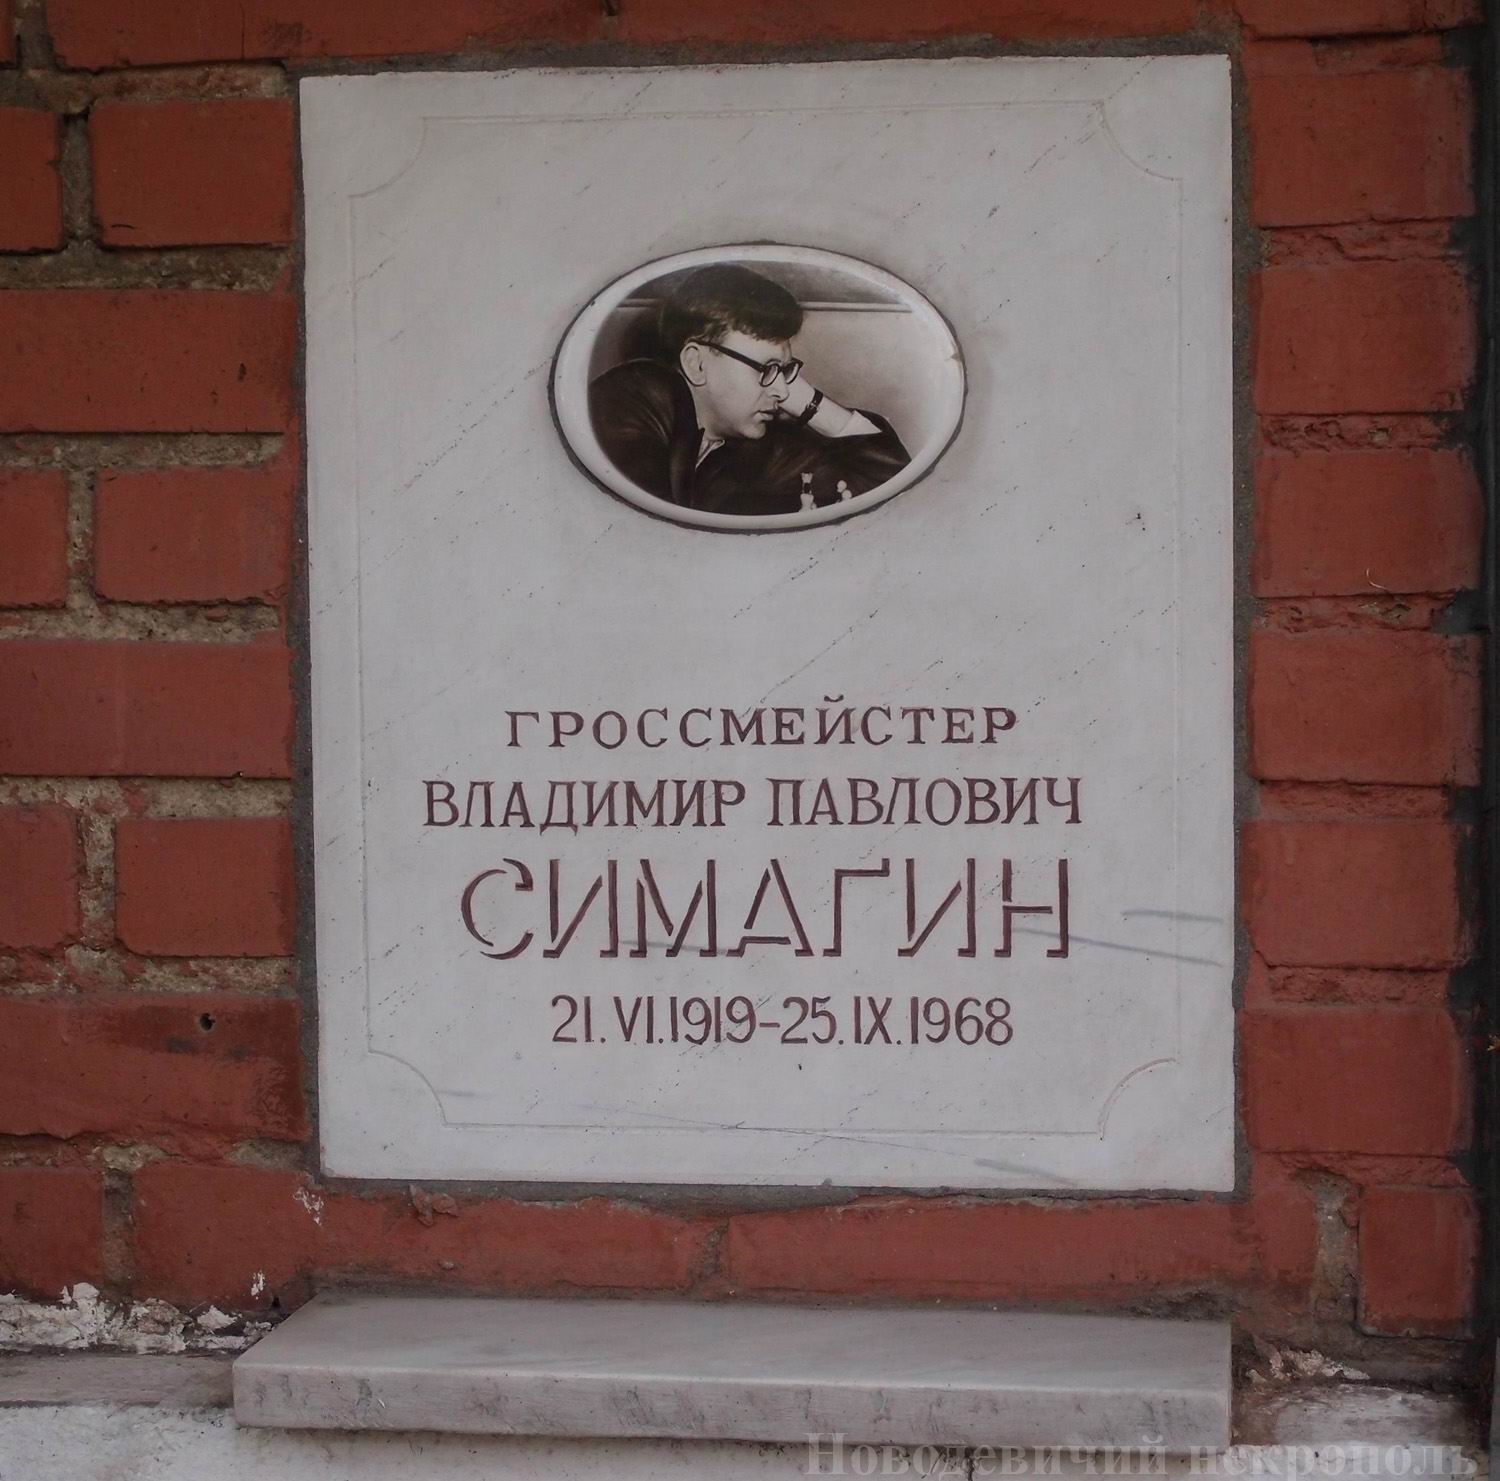 Плита на нише Симагина В.П. (1919-1968), на Новодевичьем кладбище (колумбарий [131]-18-4).